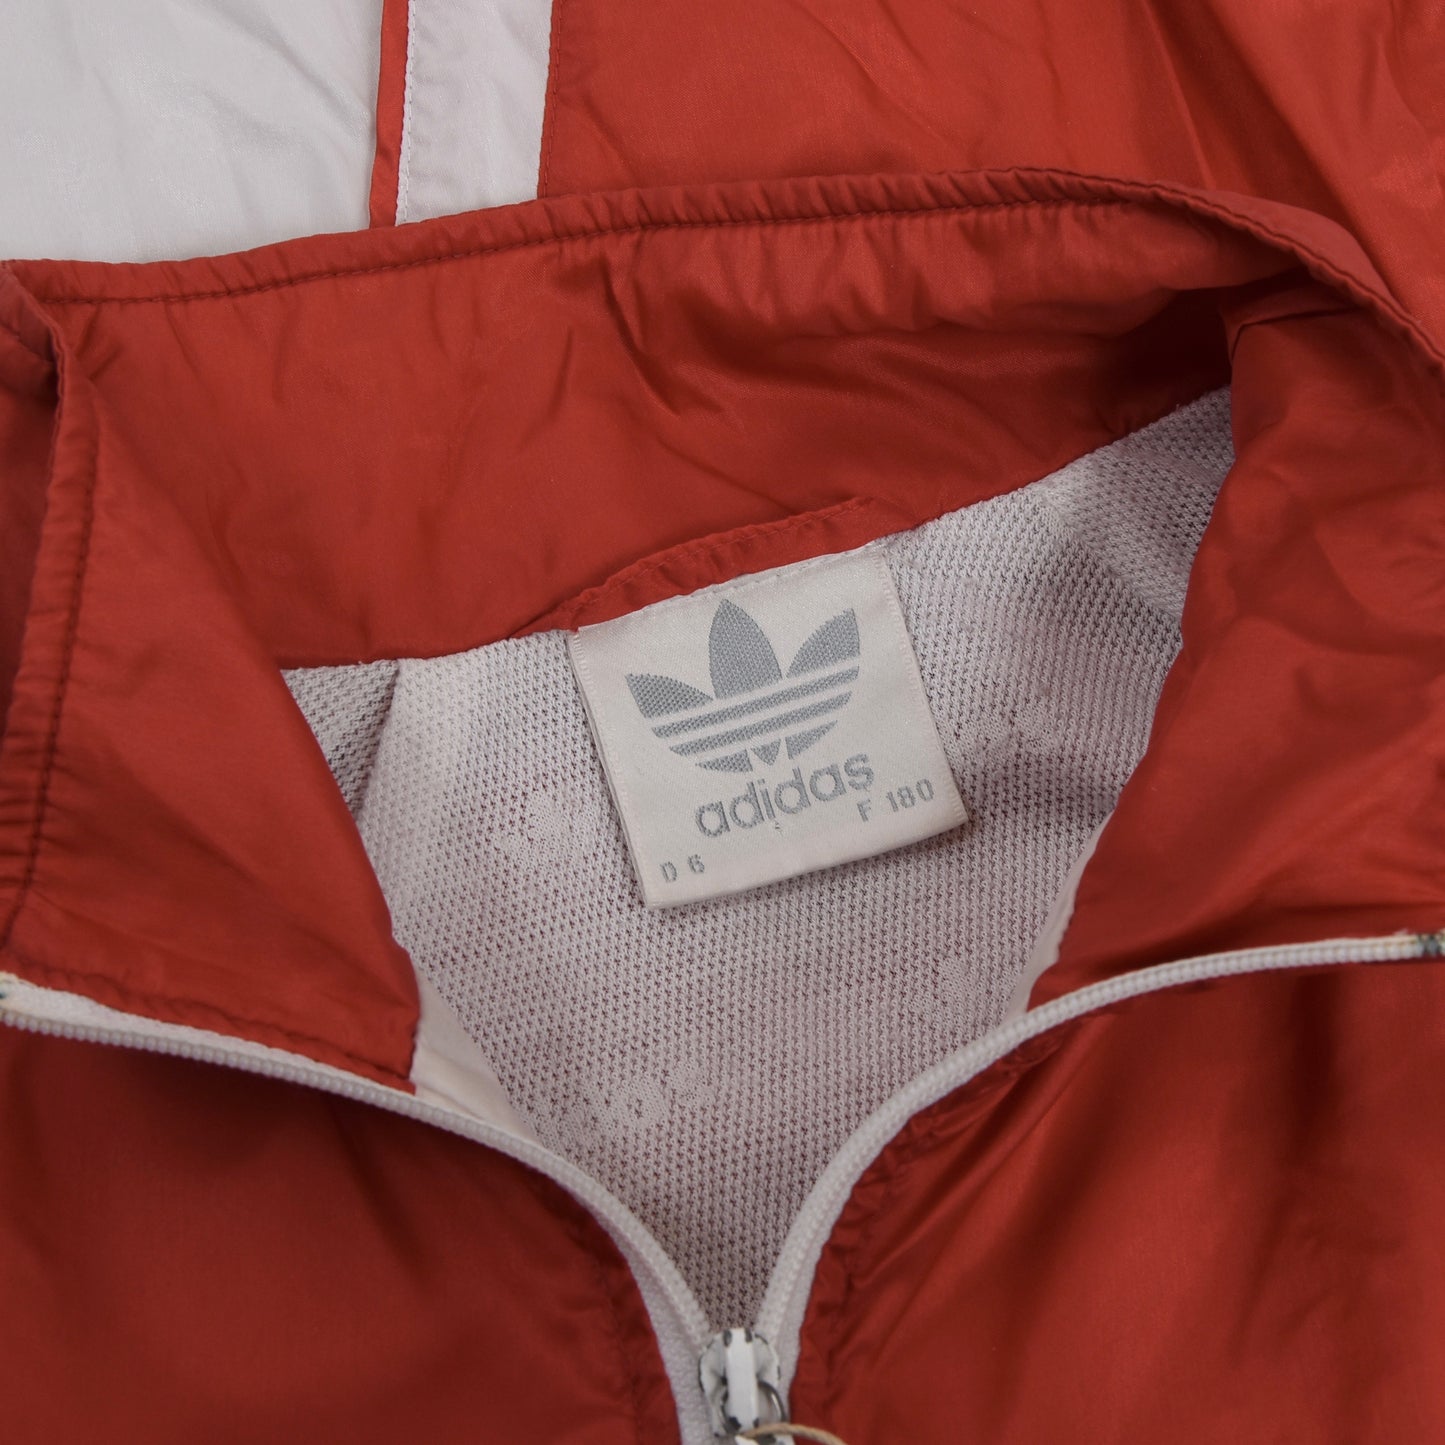 90er Adidas Trainingsanzug Größe D6 - Rot